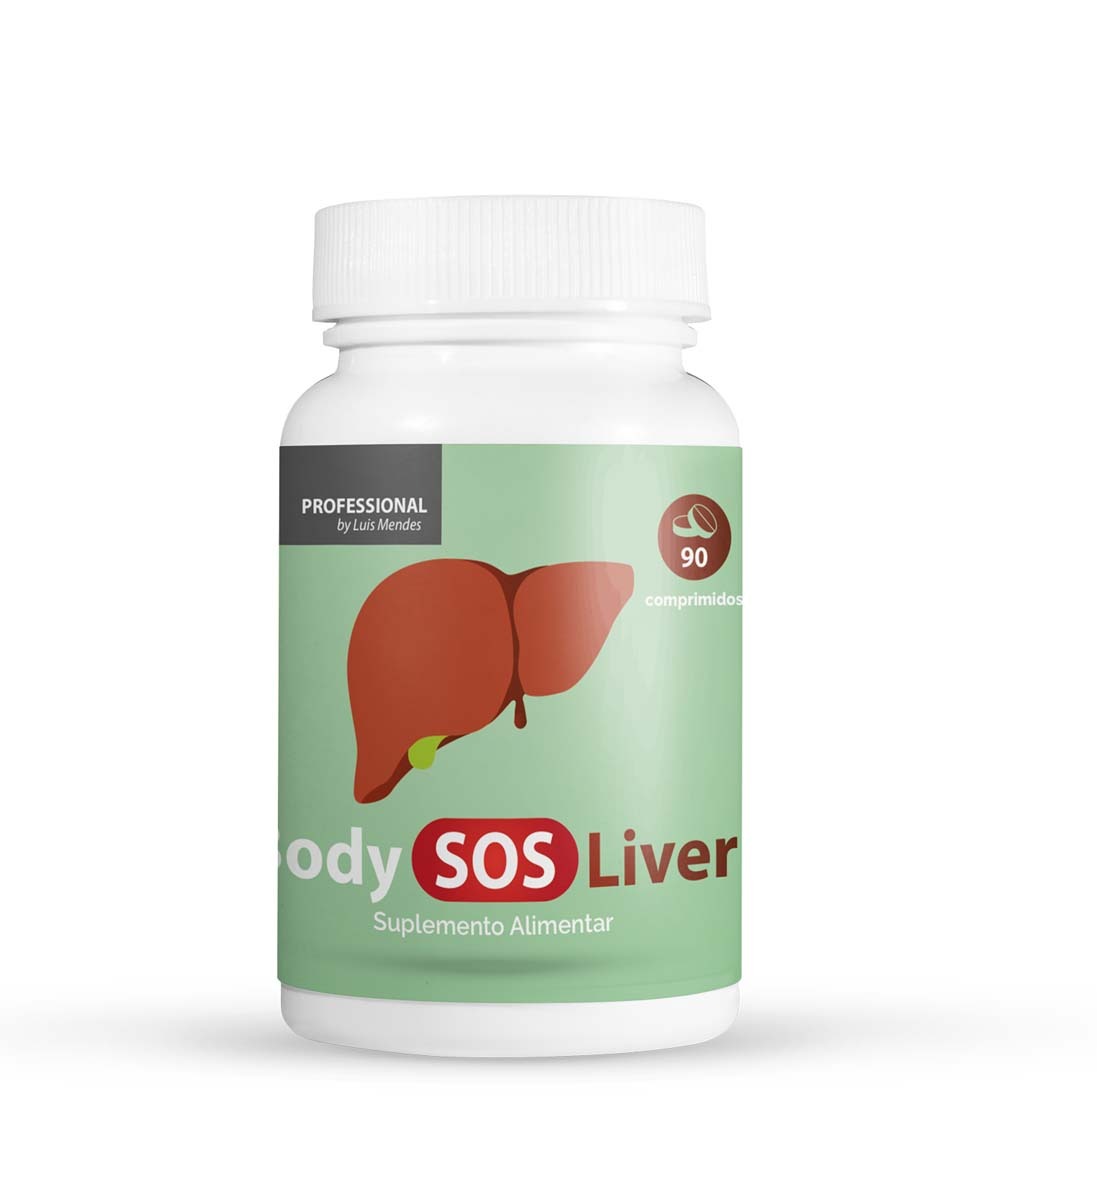 Body Sos Liver